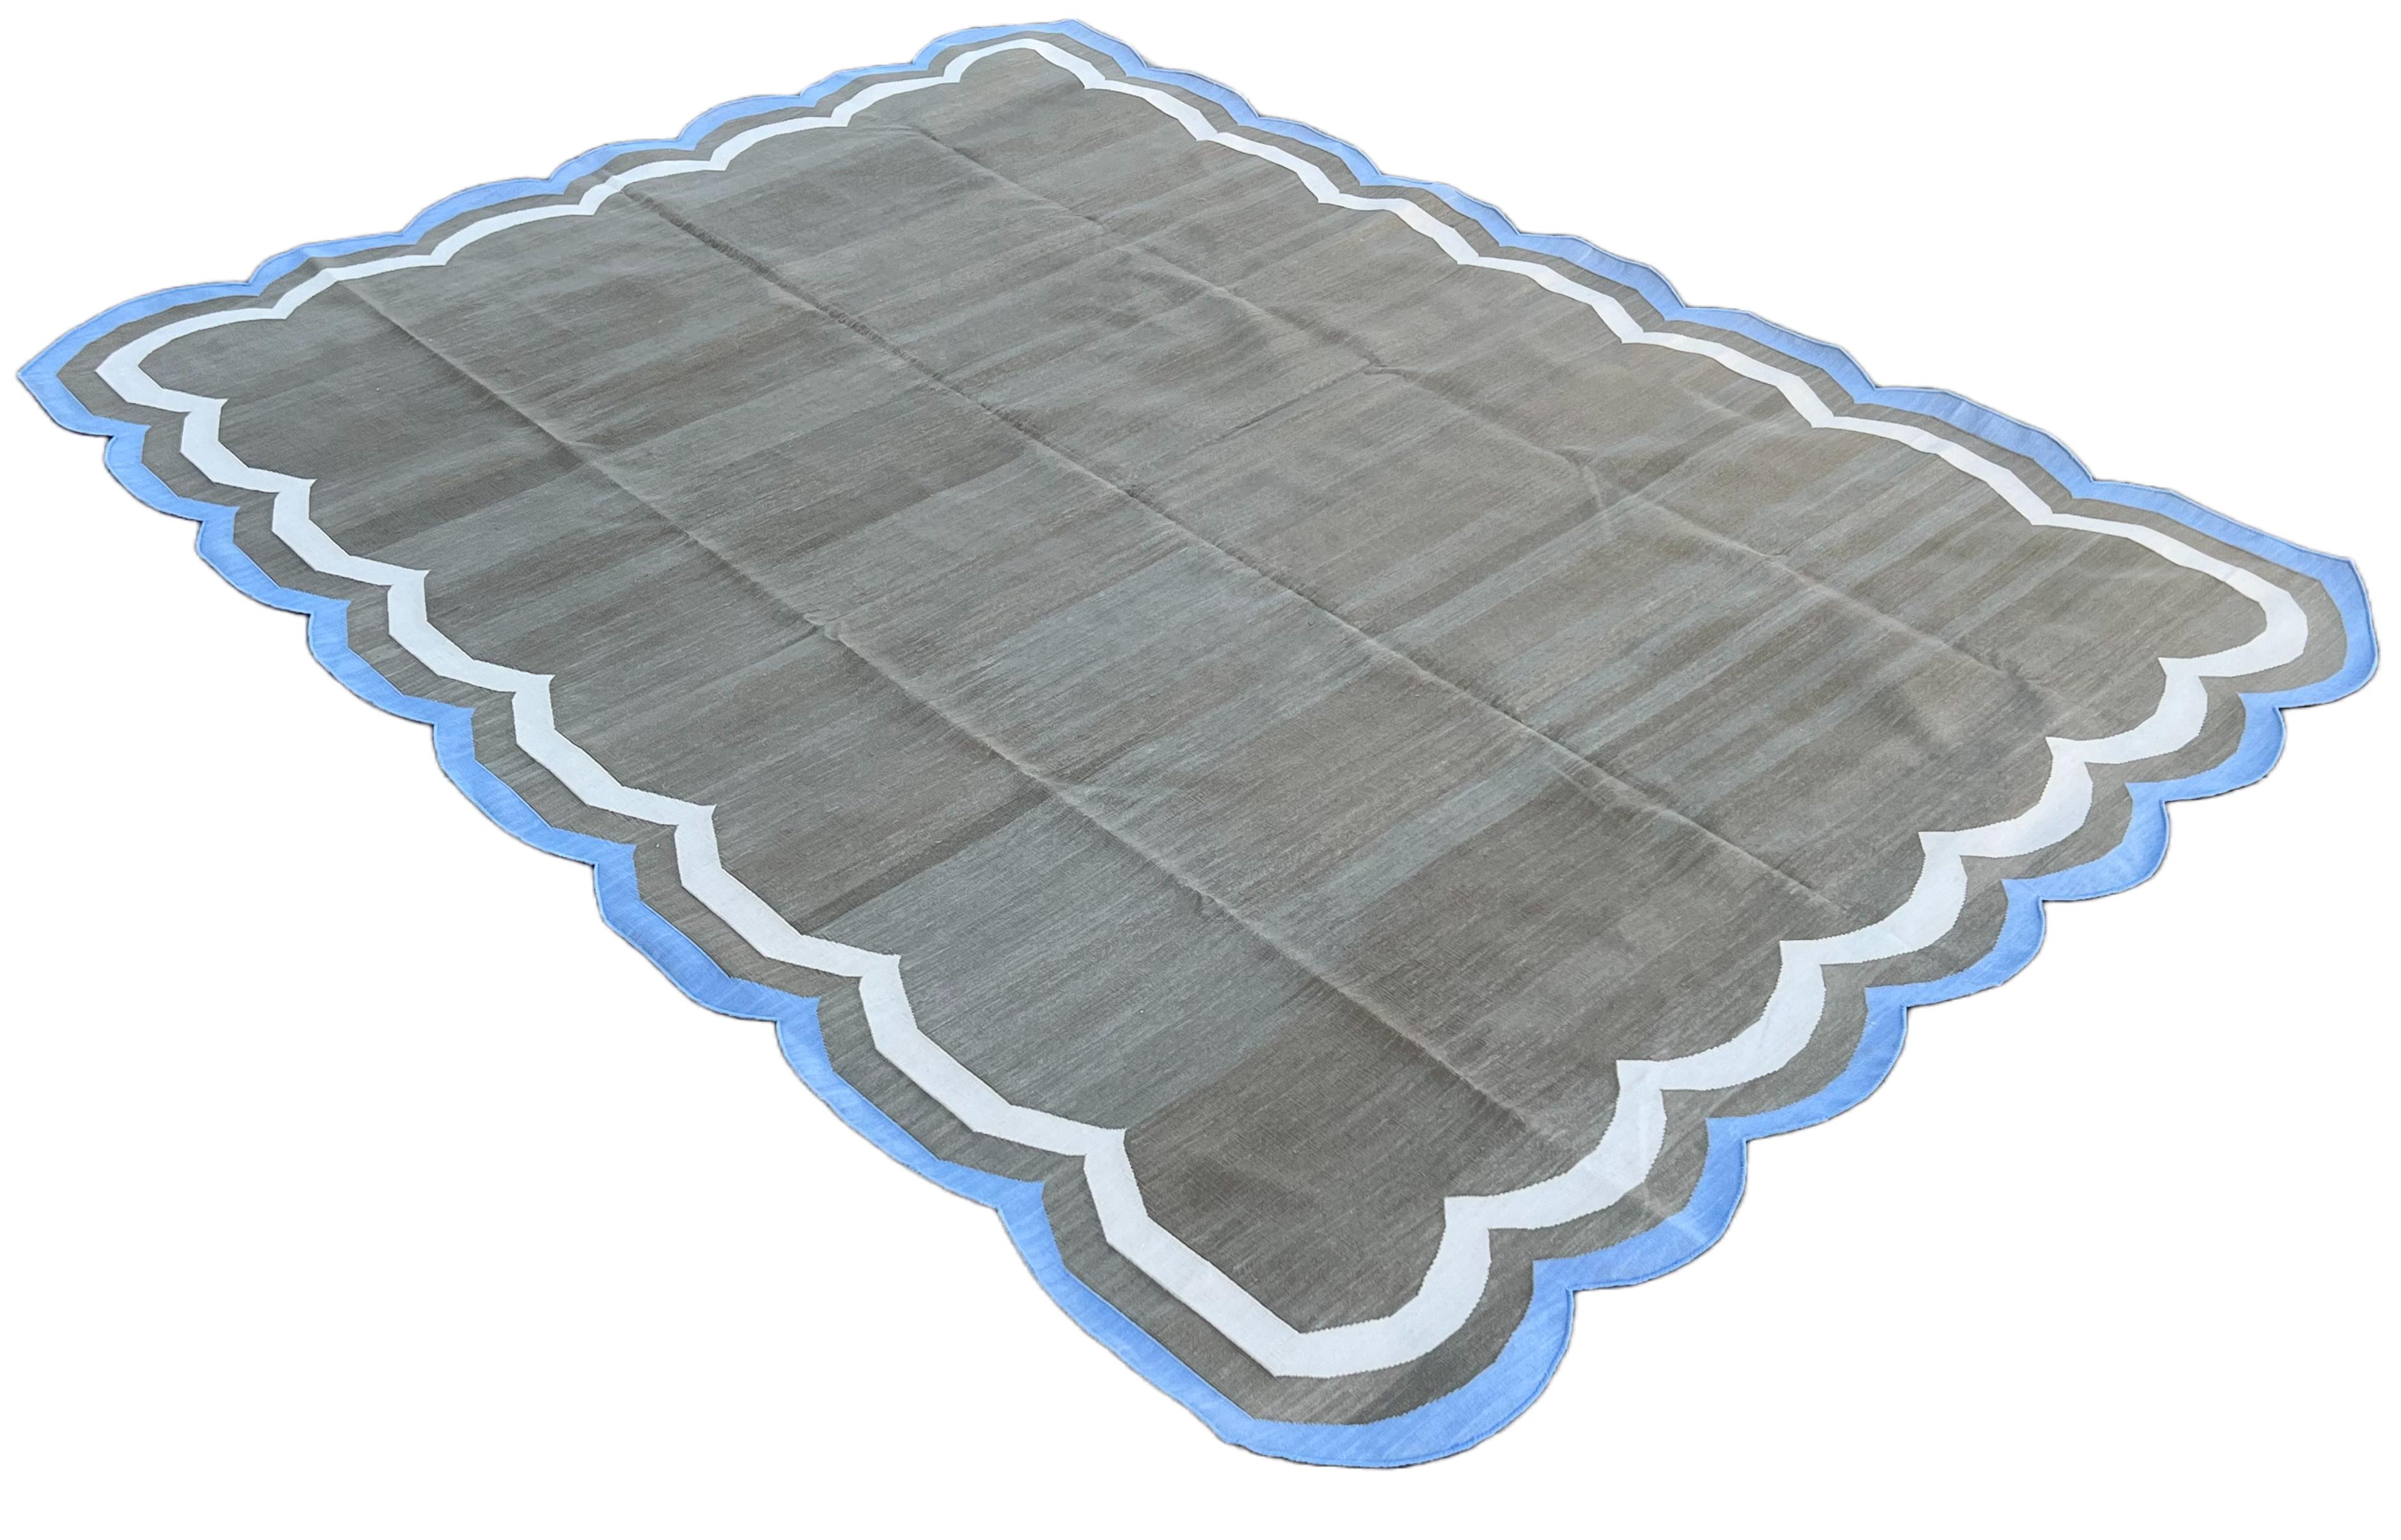 Baumwolle pflanzlich gefärbt braun und hellblau 4-seitig indischen Scalloped Teppich - 8'x10'
Diese speziellen flachgewebten Dhurries werden aus 15-fachem Garn aus 100% Baumwolle handgewebt. Aufgrund der speziellen Fertigungstechniken, die zur